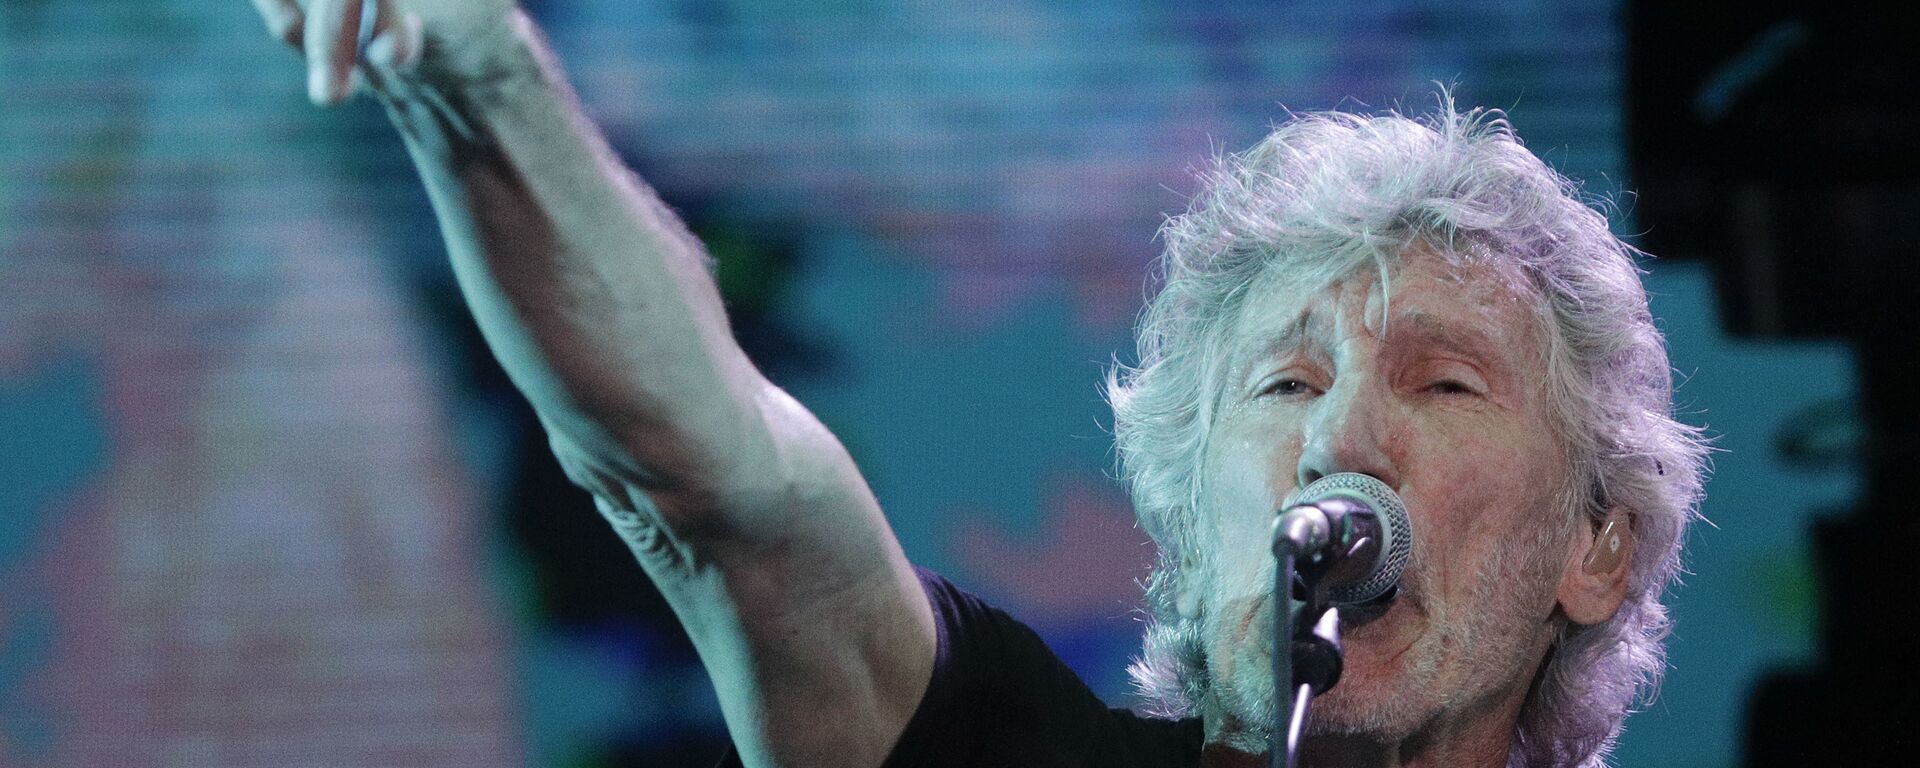 El músico británico Roger Waters - Sputnik Mundo, 1920, 30.11.2021